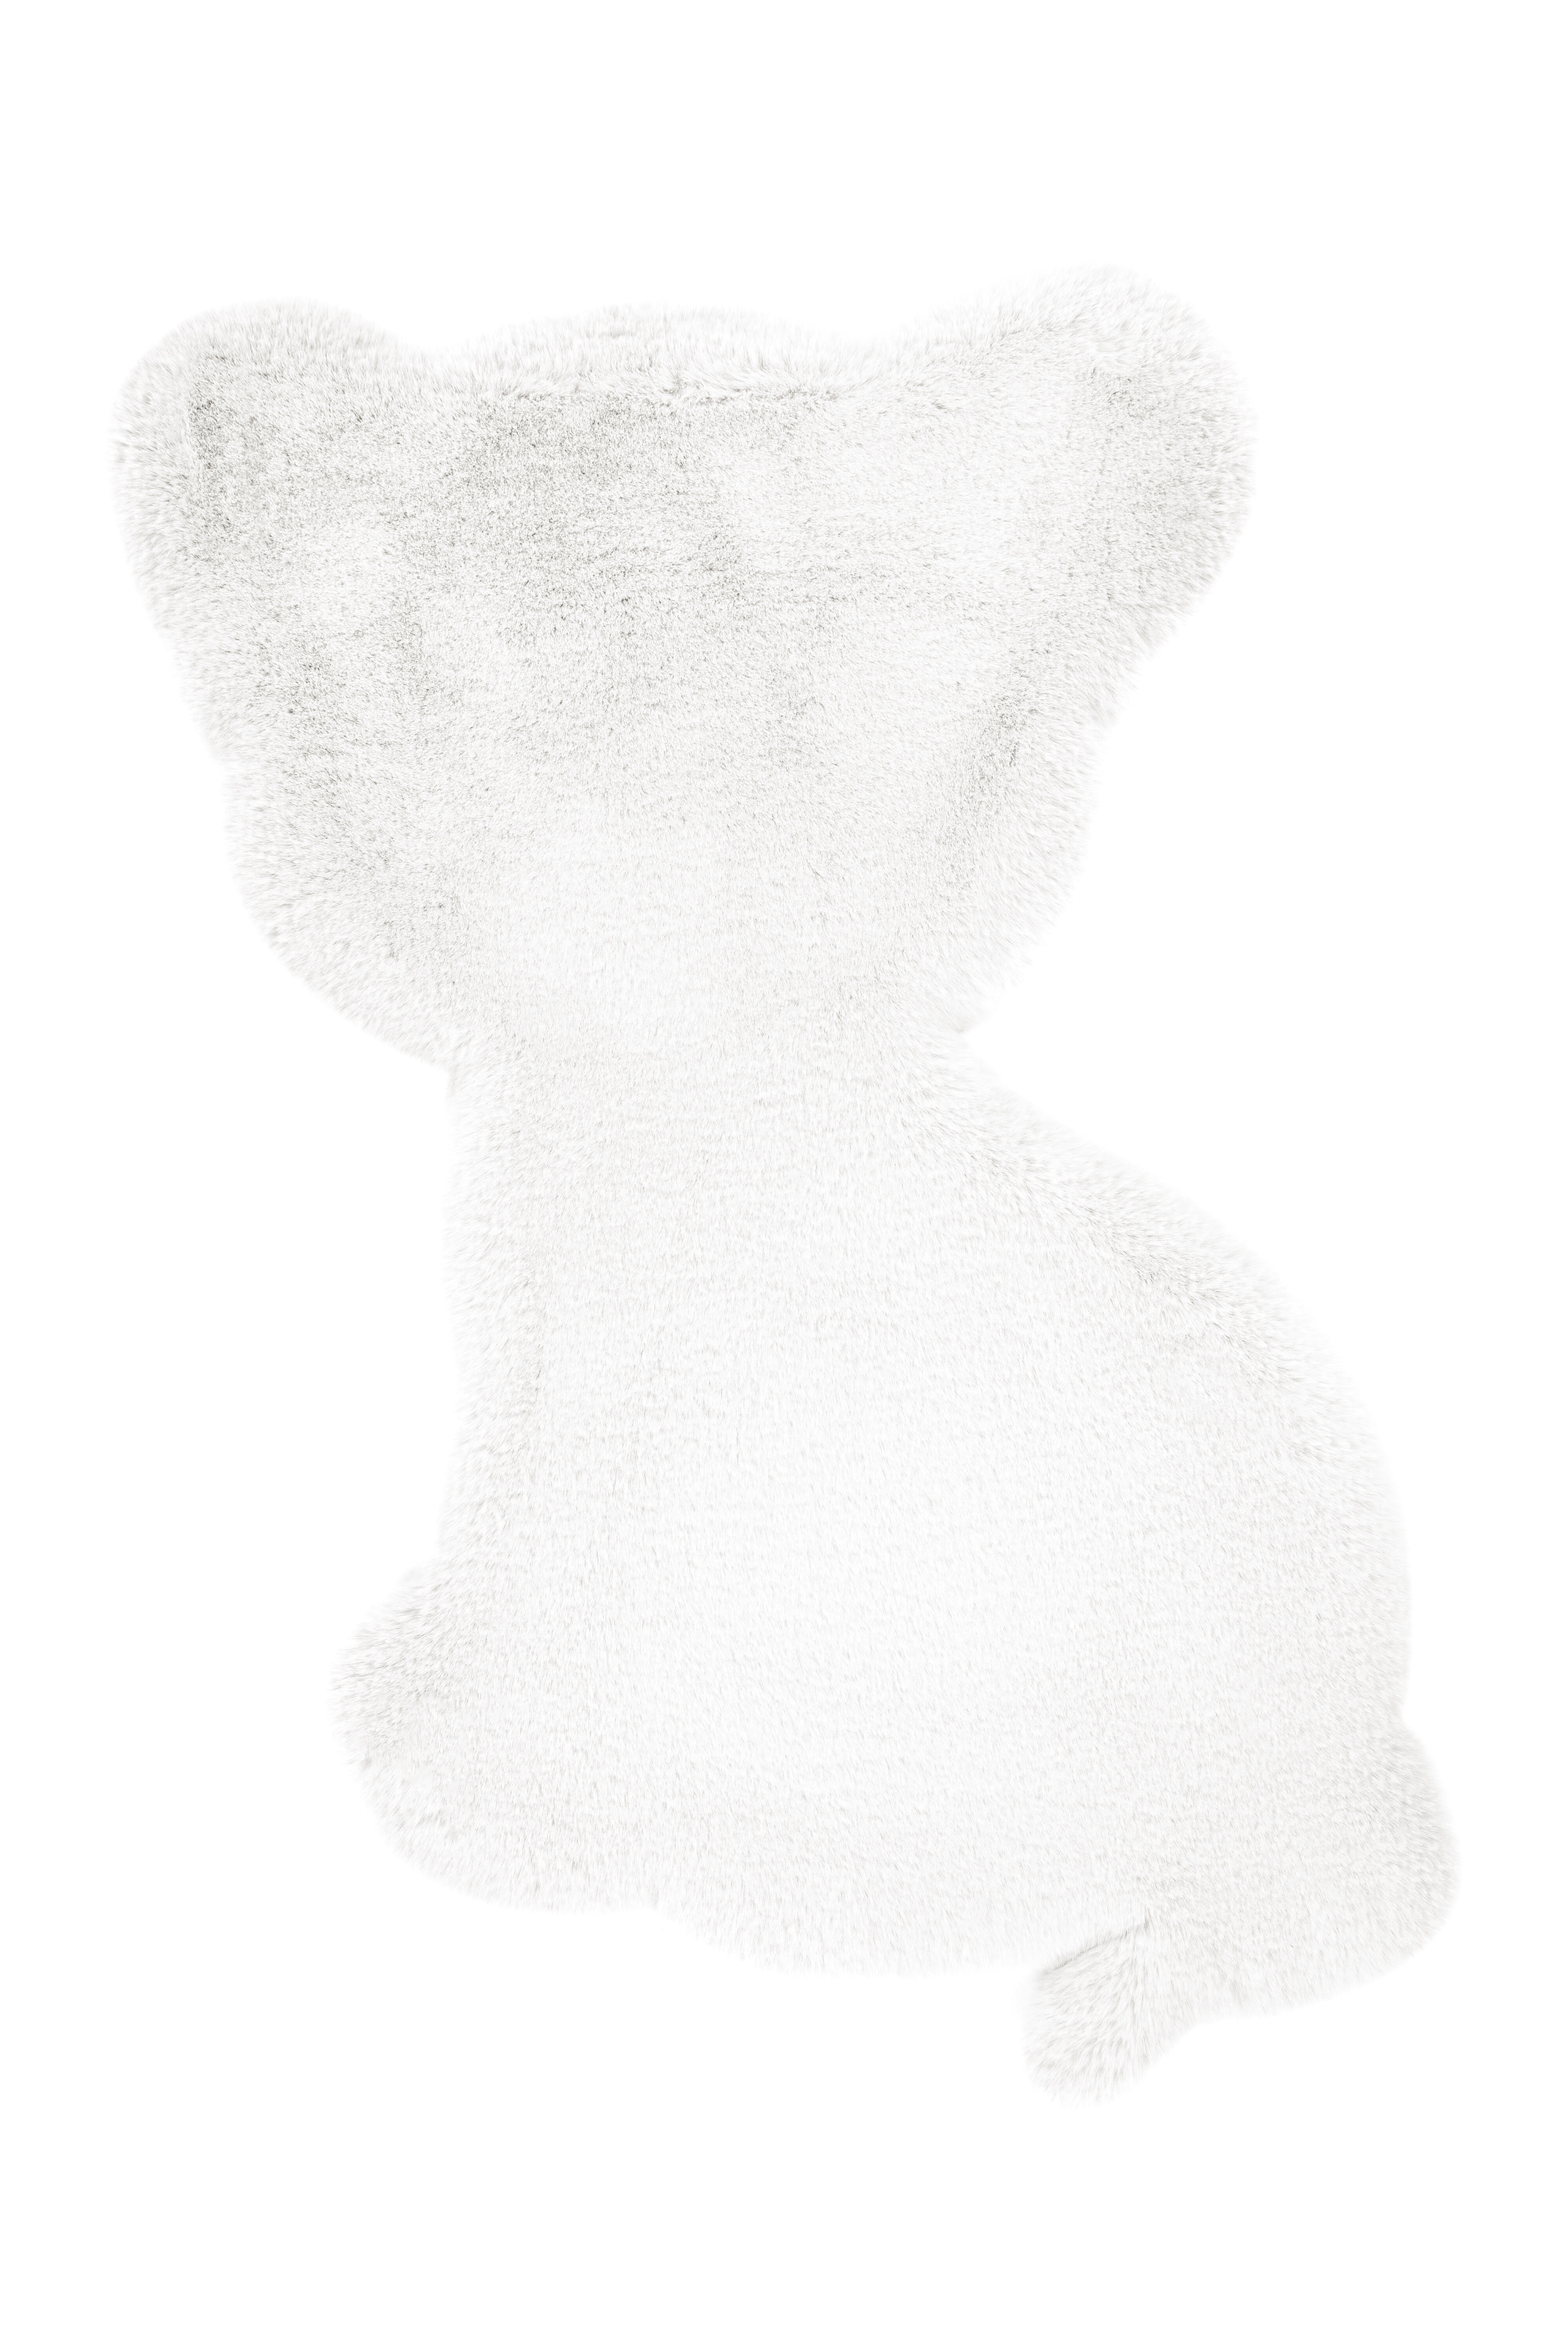 Kayoom Vloerkleed 'Tijgertje' kleur Wit, 69 x 90cm